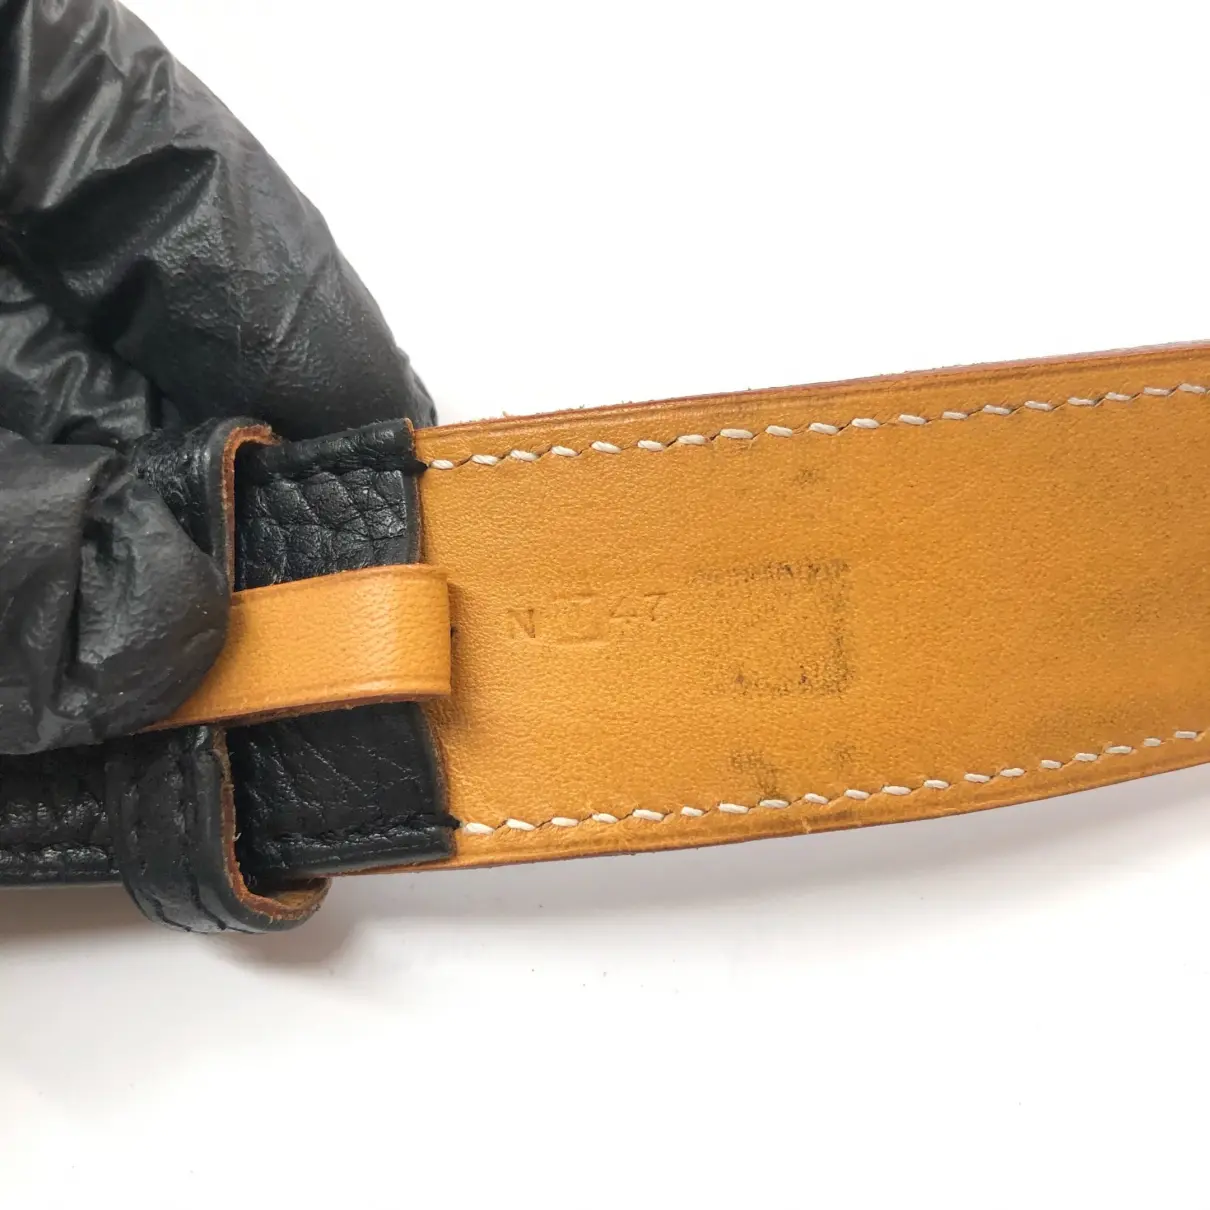 Etrivière leather belt Hermès